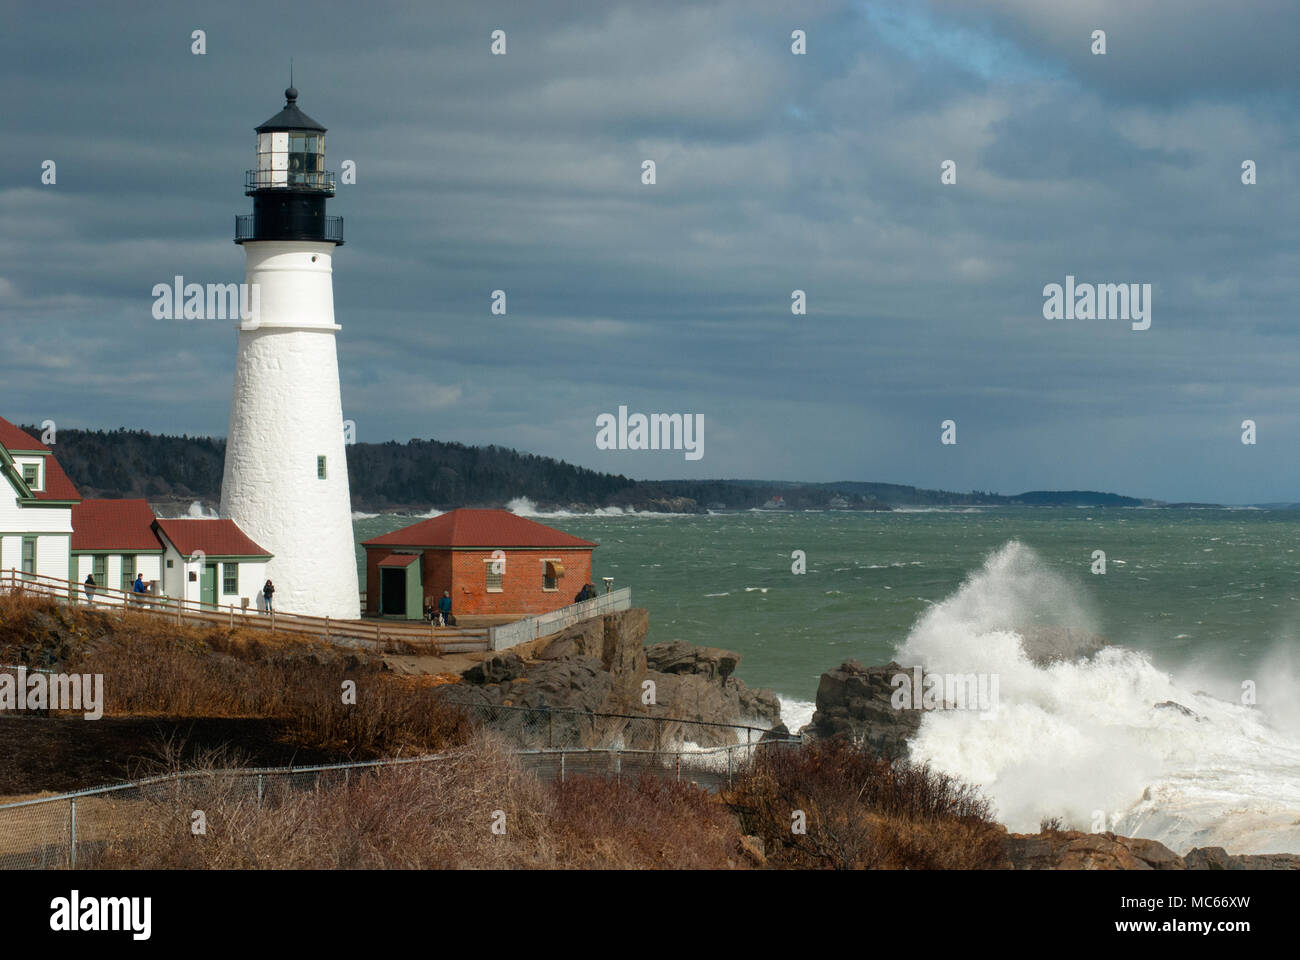 Sonne bricht durch Gewitterwolken als riesige Wellen auf schroffe Felsen beleuchtete Portland Head Lighthouse in Maine zu brechen, während des späten Winters Flut. Stockfoto